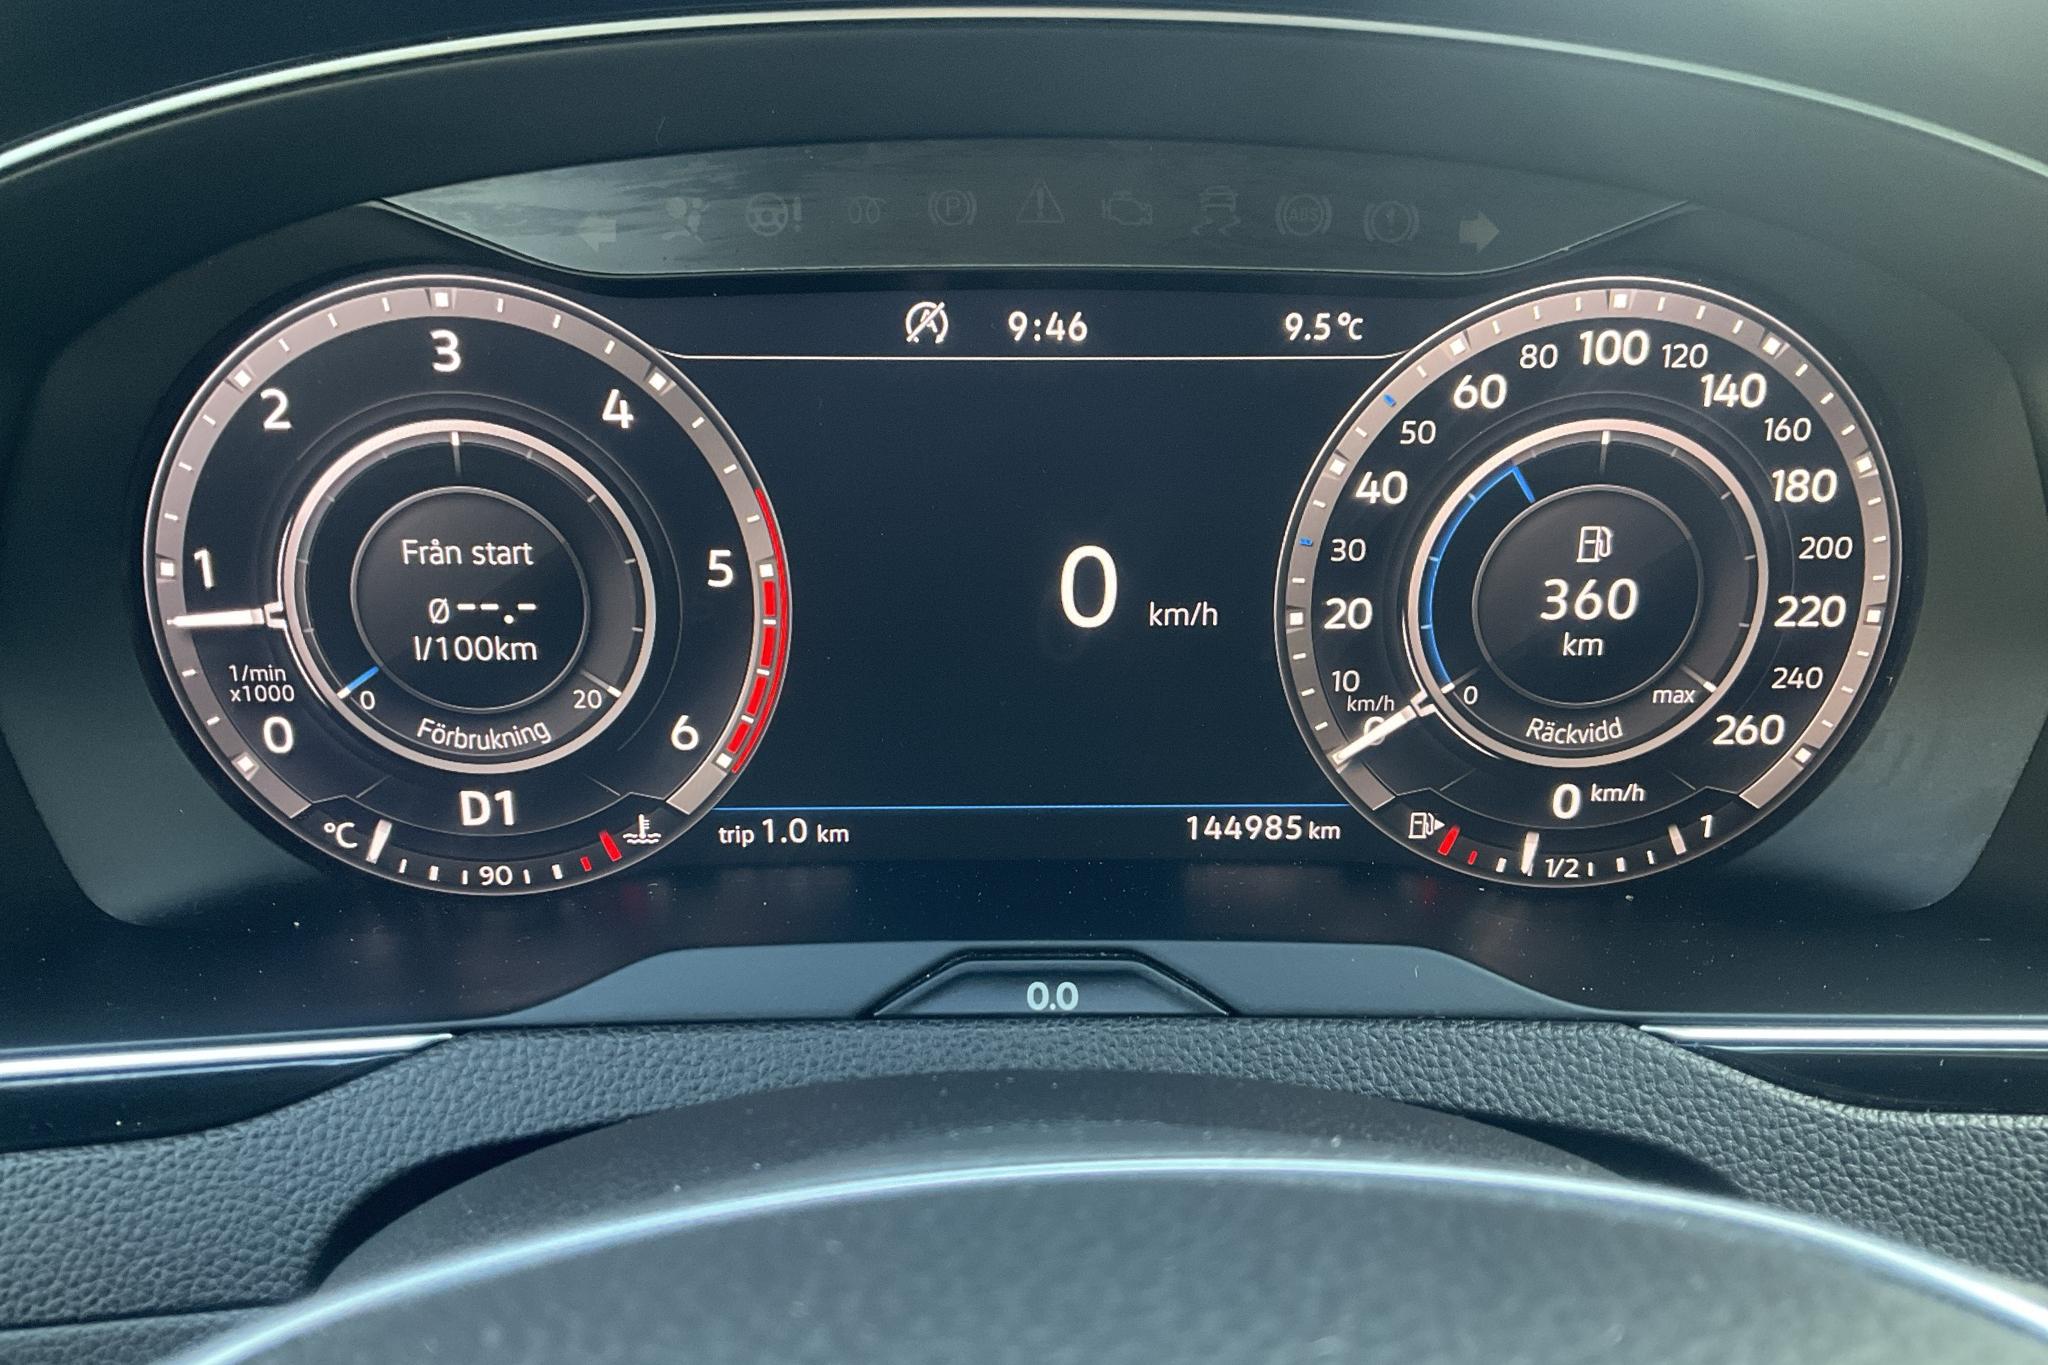 VW Passat Alltrack 2.0 TDI 4MOTION (190hk) - 144 980 km - Automatyczna - srebro - 2018